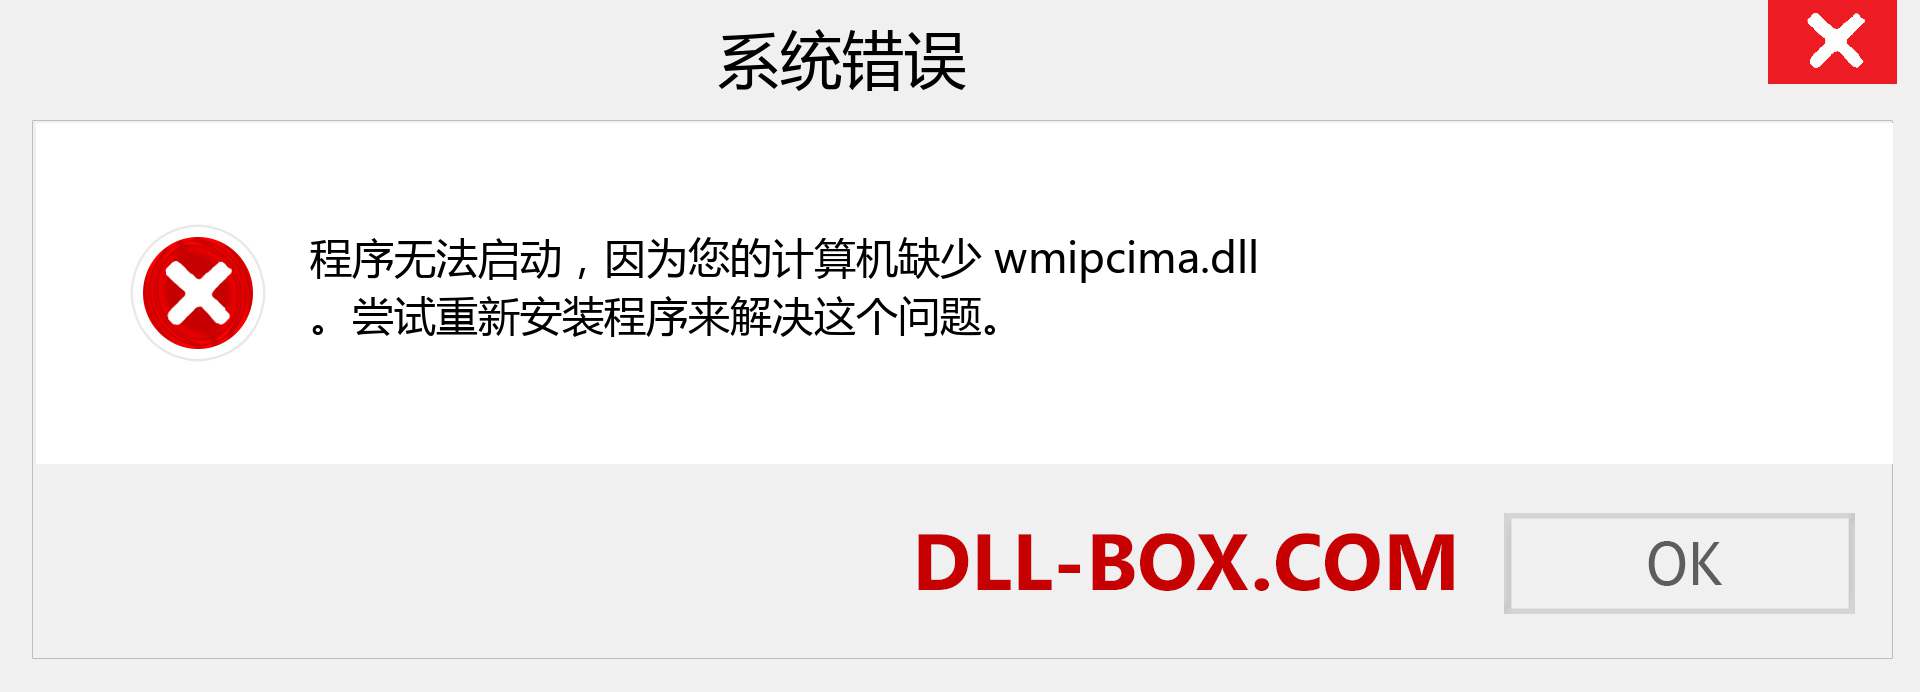 wmipcima.dll 文件丢失？。 适用于 Windows 7、8、10 的下载 - 修复 Windows、照片、图像上的 wmipcima dll 丢失错误